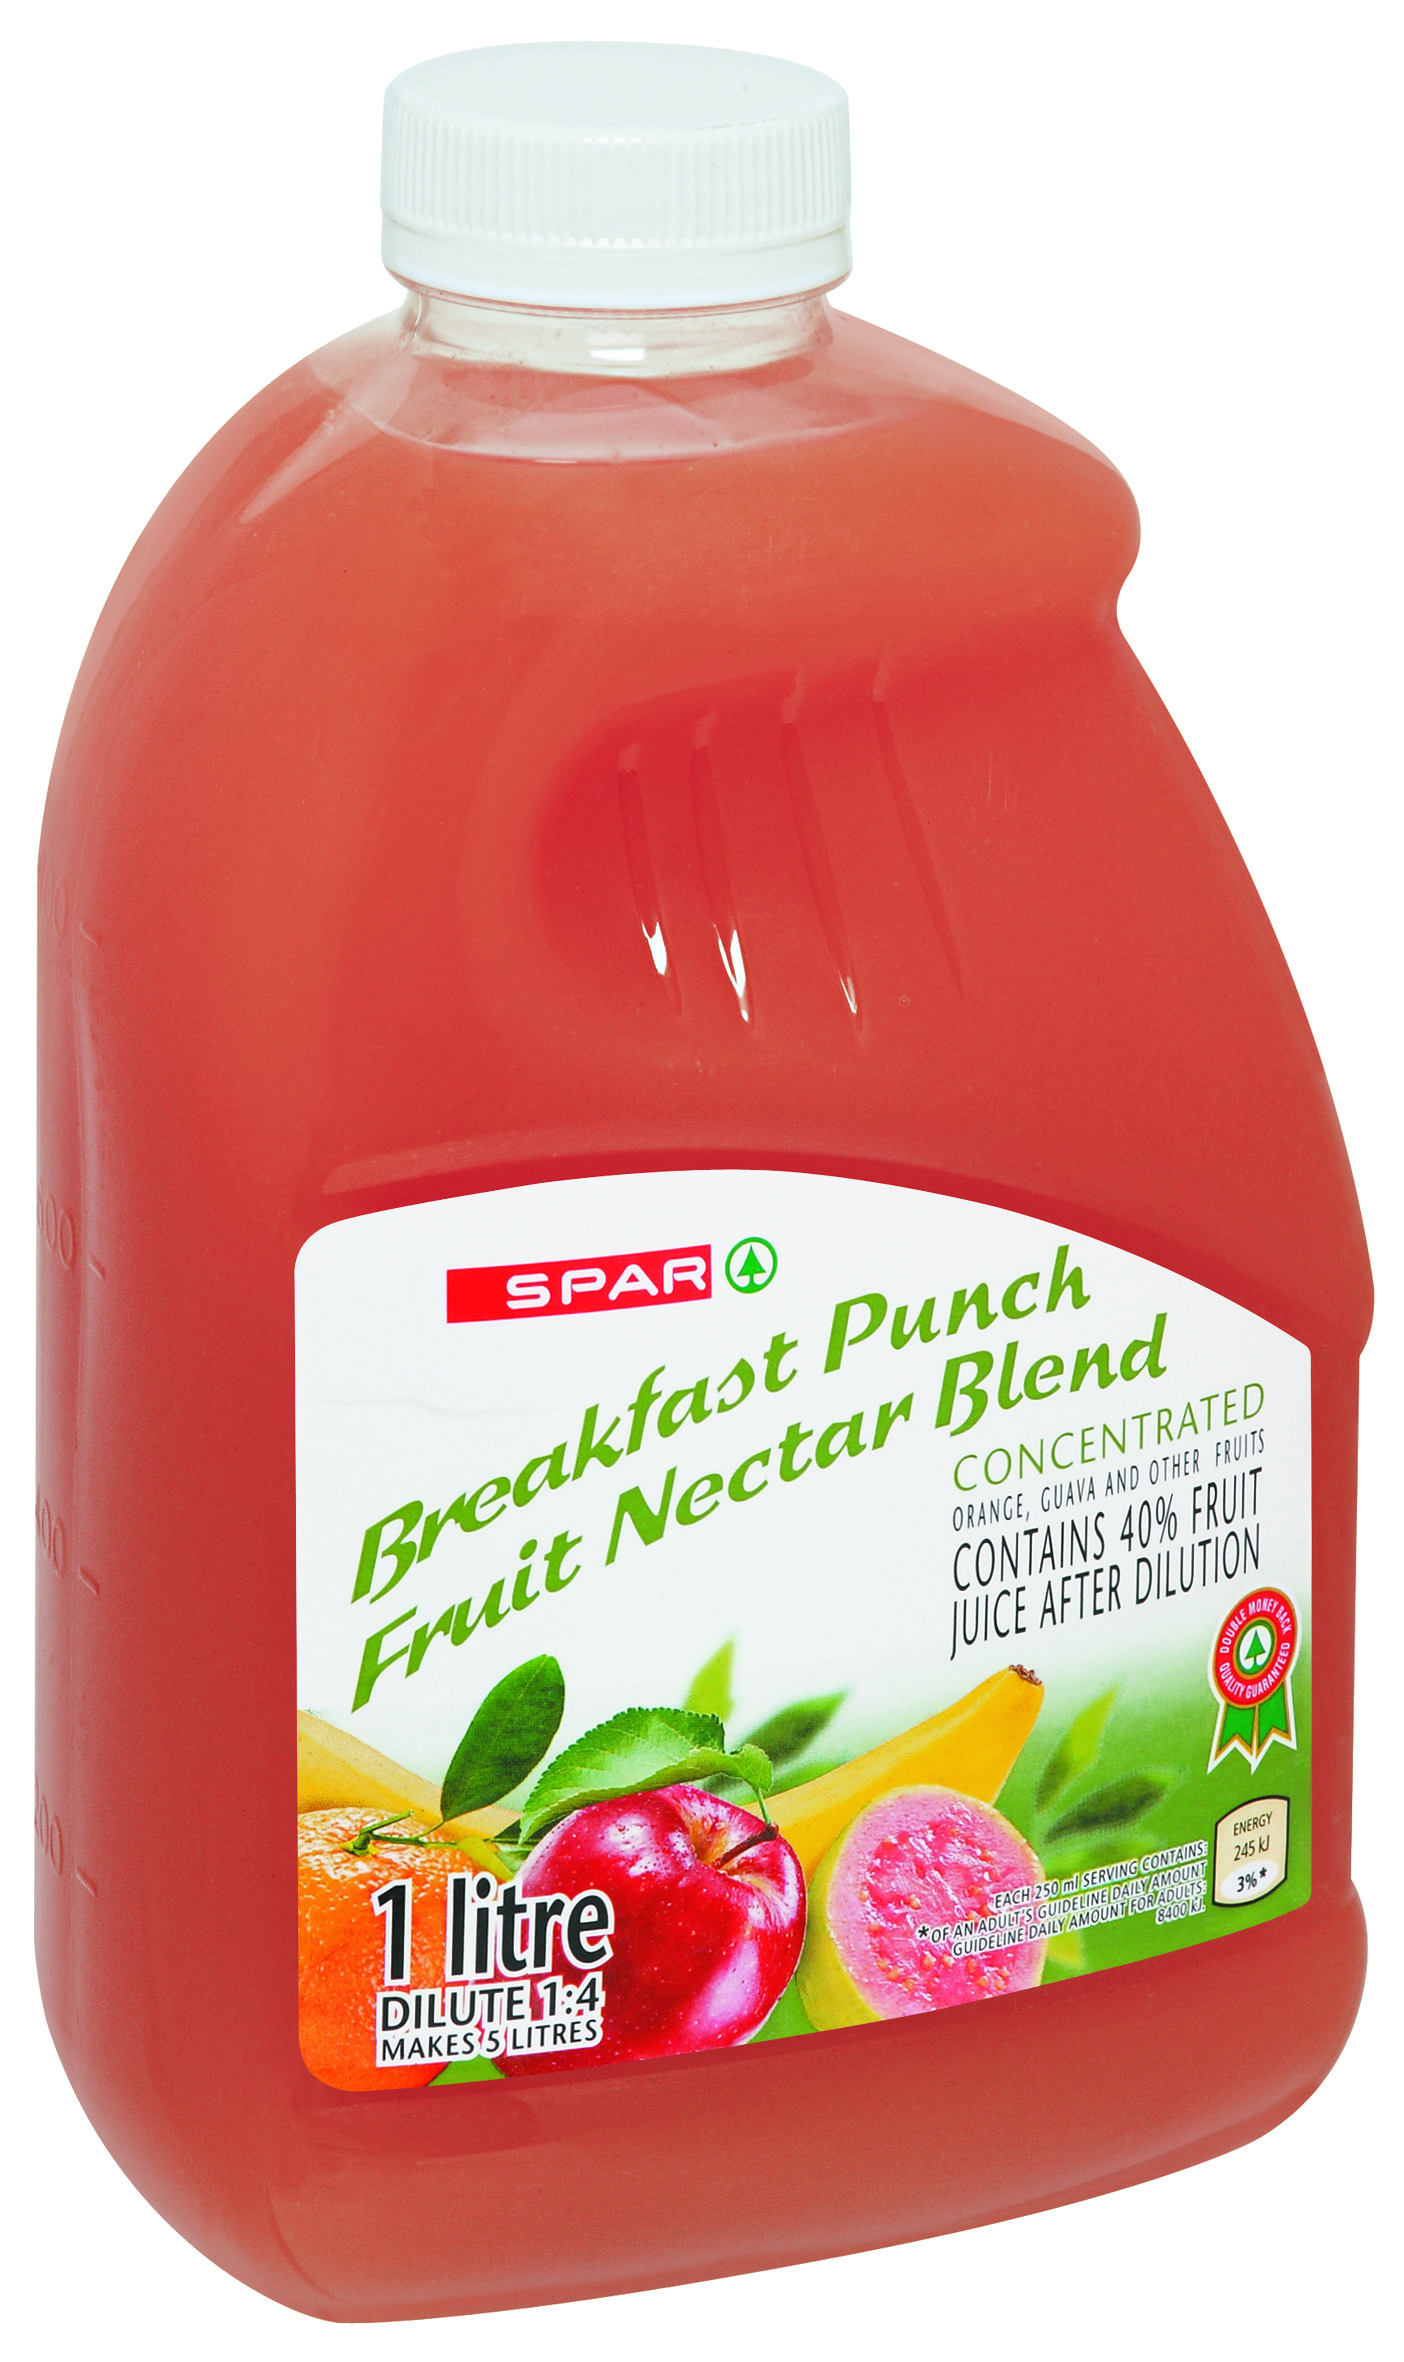 fruit nectar blend - breakfast punch  